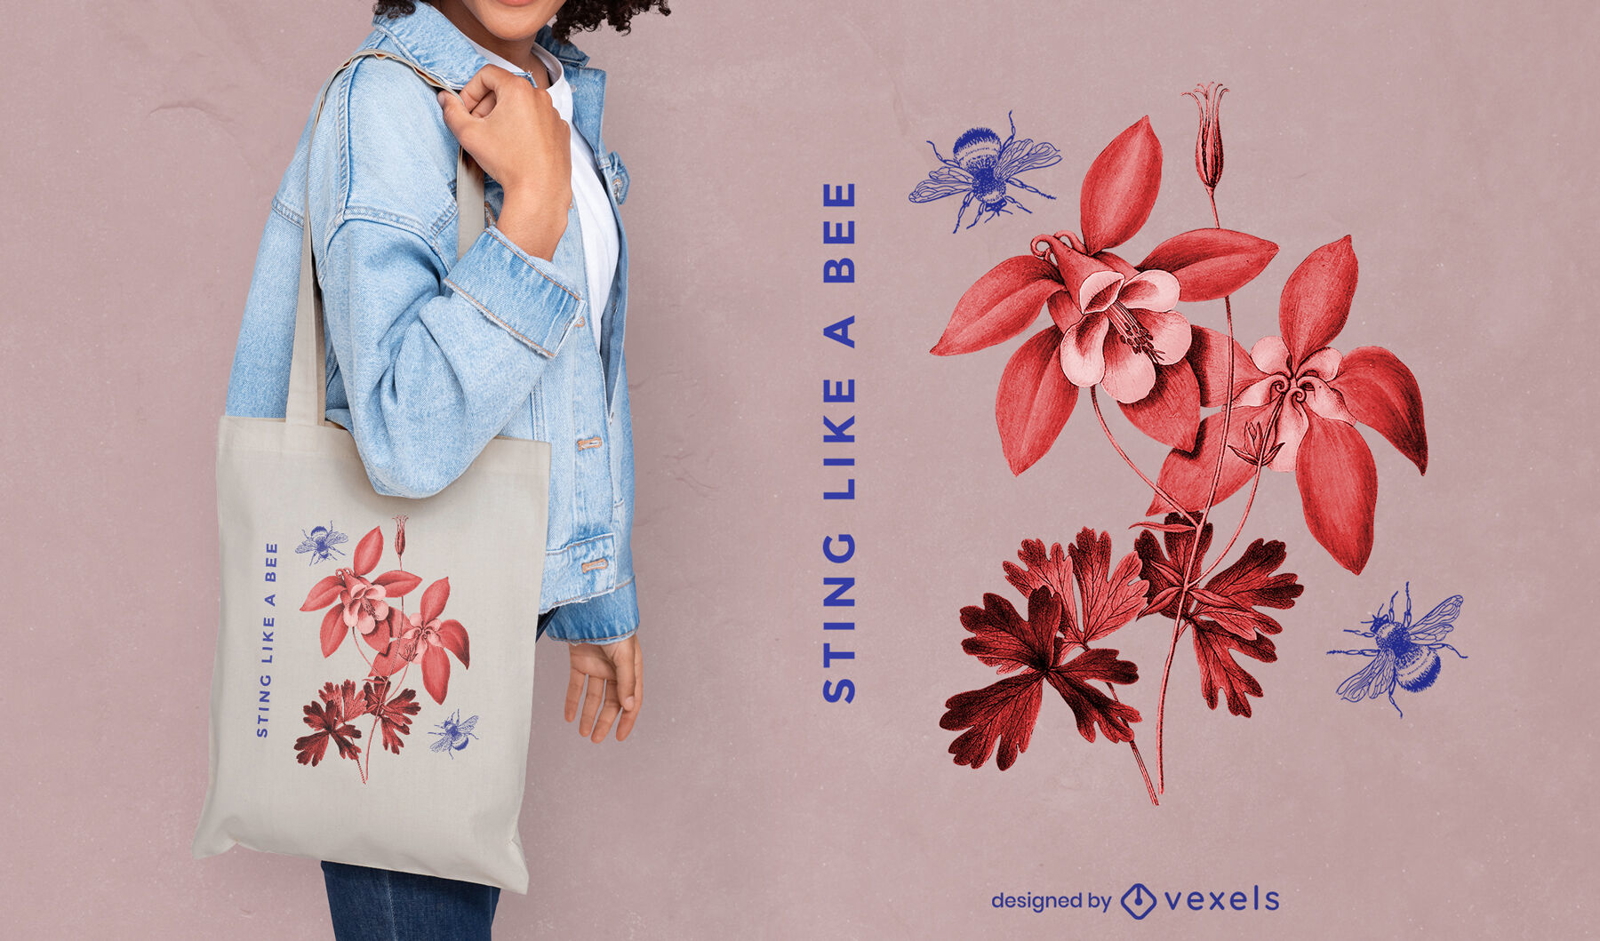 Diseño de tote bag abejas y flores.